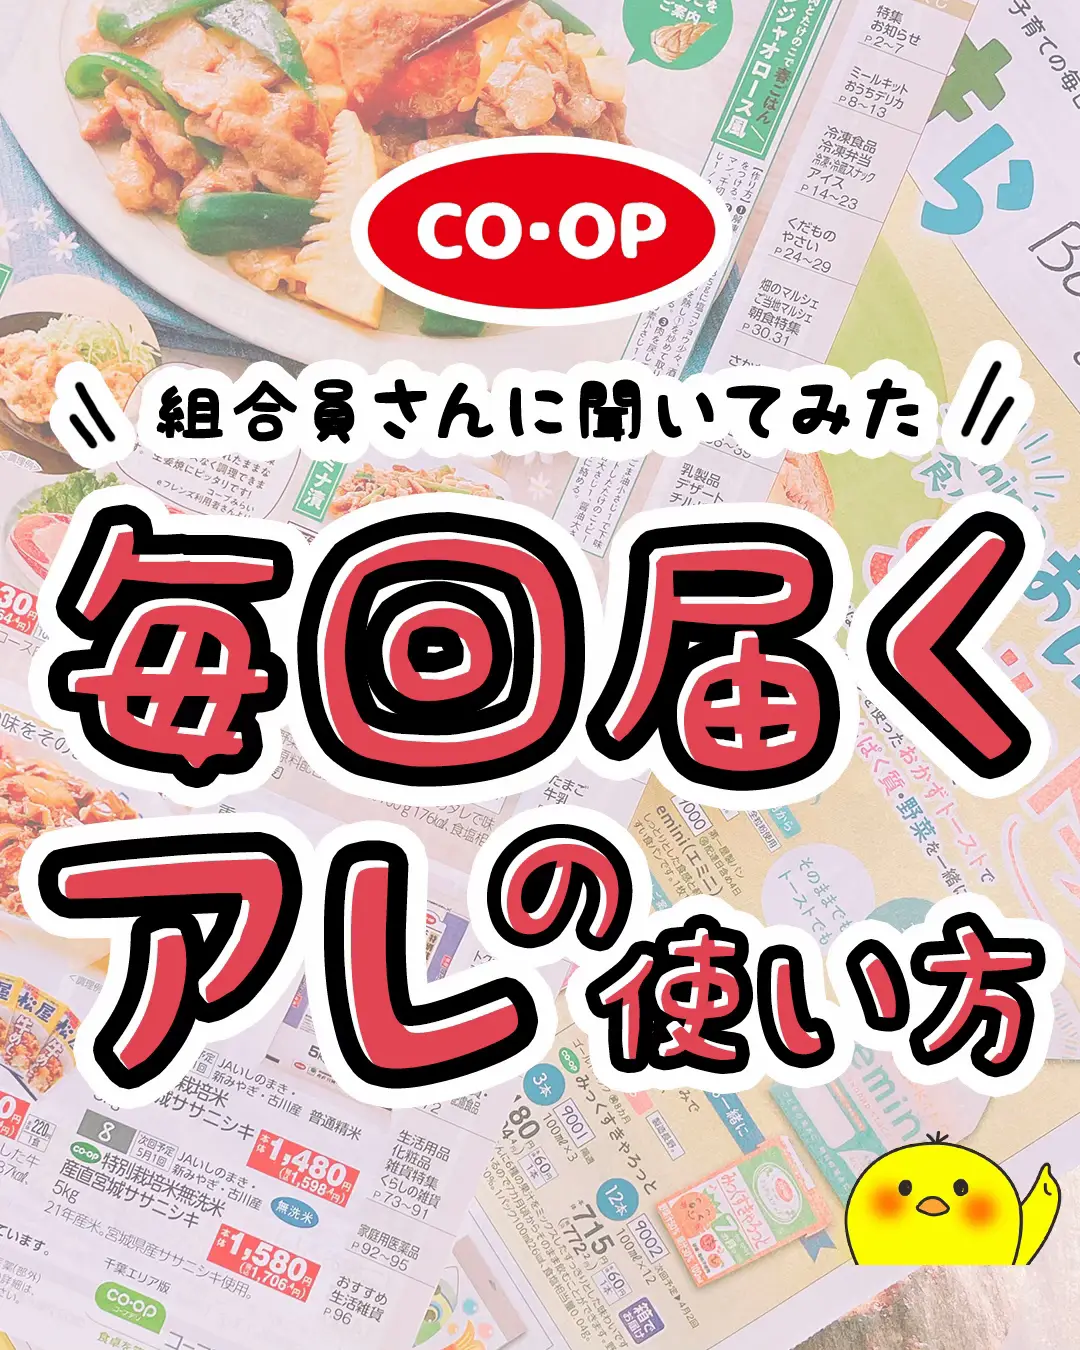 コープクオリティ お菓子値段 - Lemon8検索